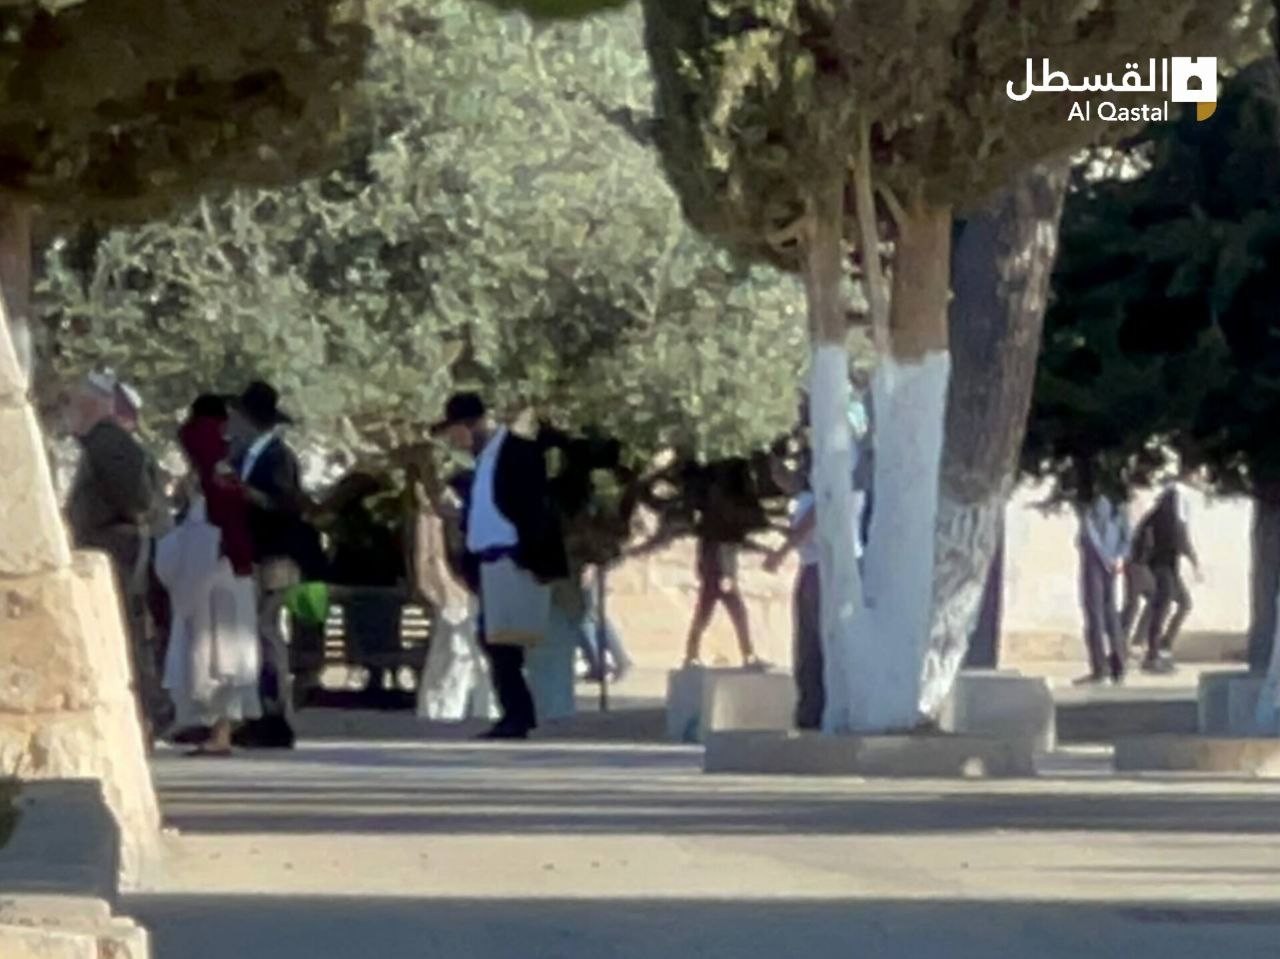  مستوطنون يقتحمون المسجد الأقصى المبارك بحراسة من قوات الاحتلال (4).jpeg